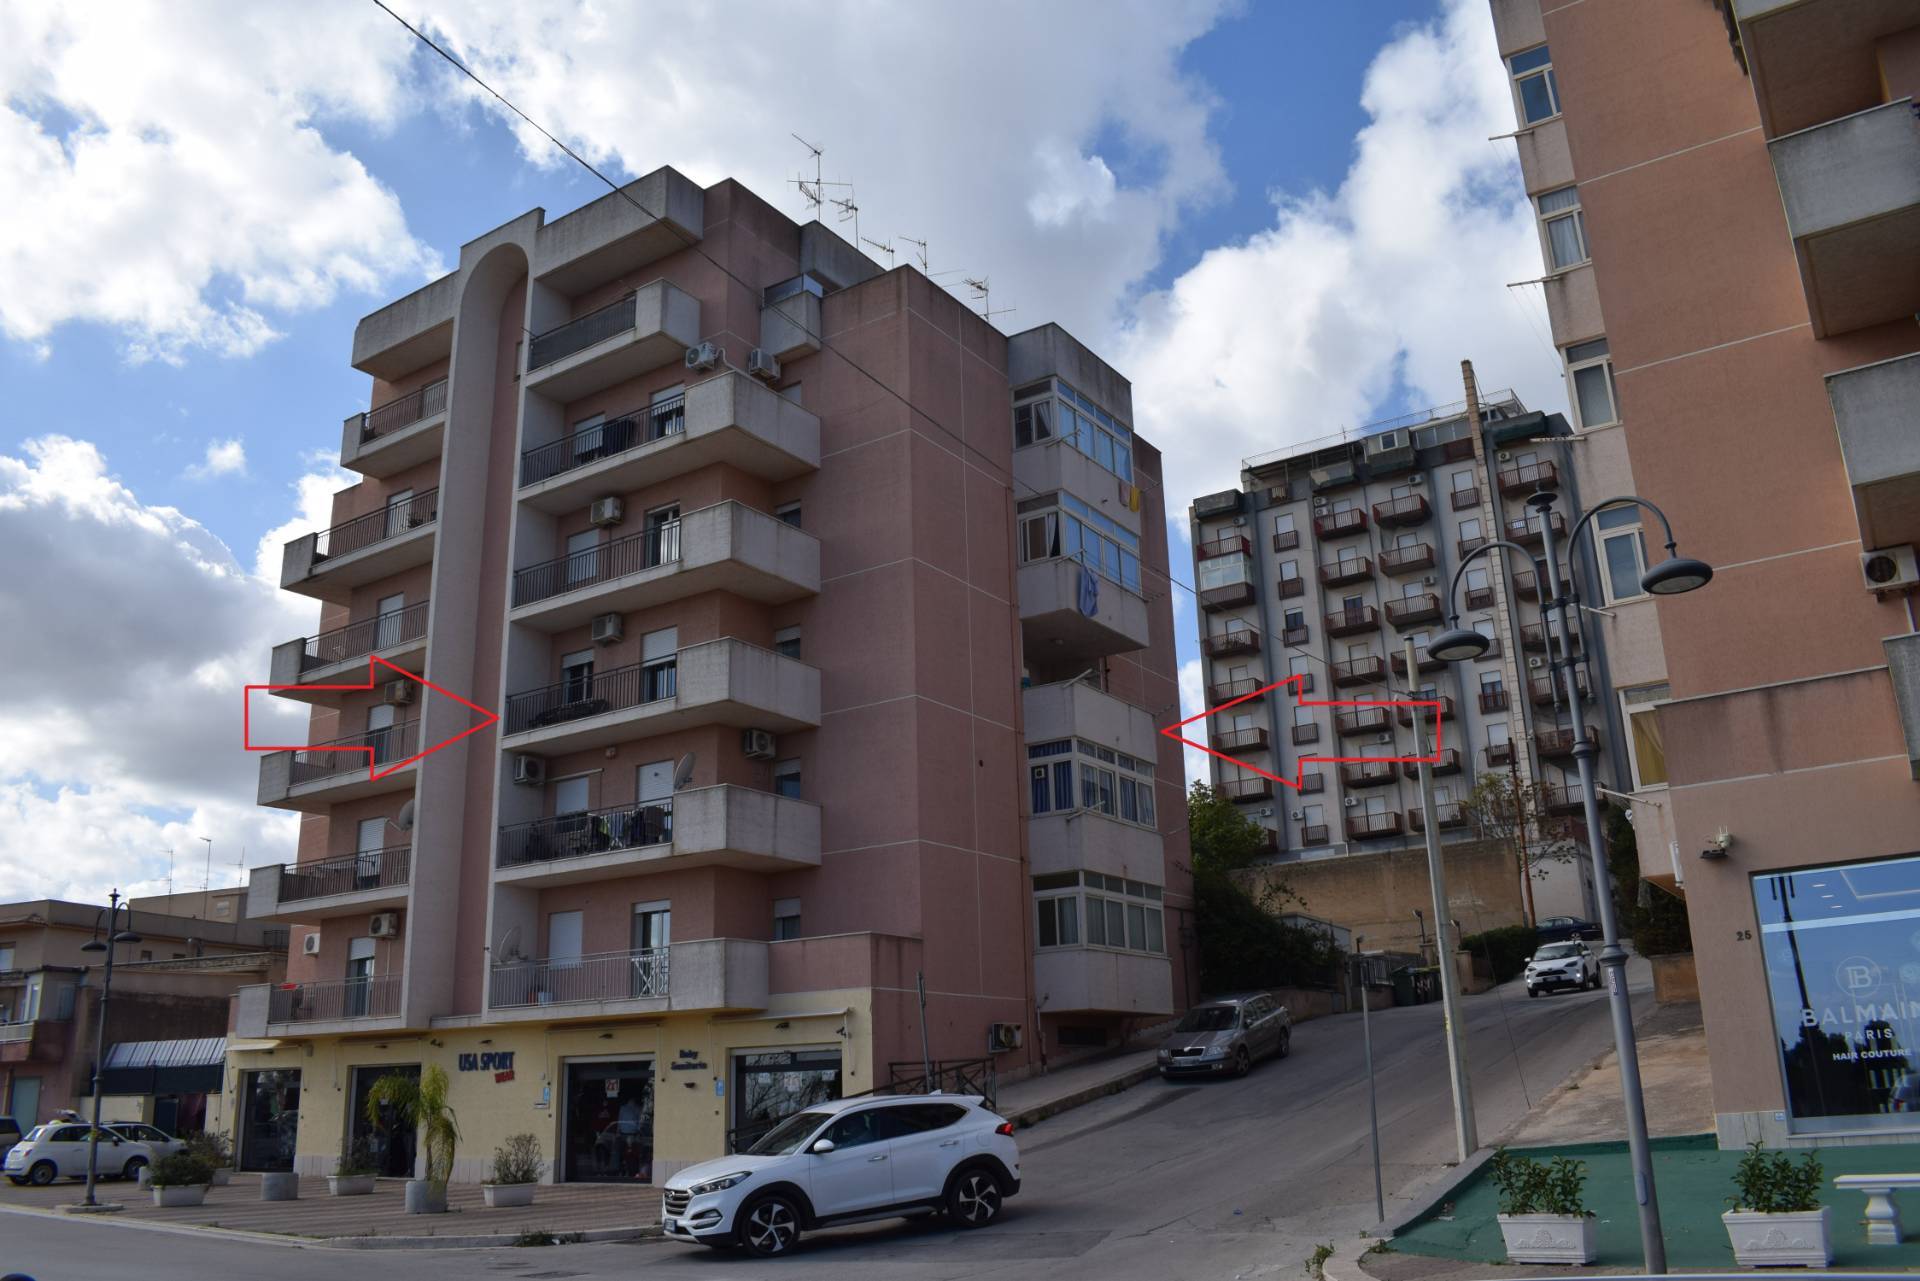 Appartamento in vendita a Castelvetrano, 6 locali, zona Località: CastelvetranoCitt?, prezzo € 108.000 | PortaleAgenzieImmobiliari.it